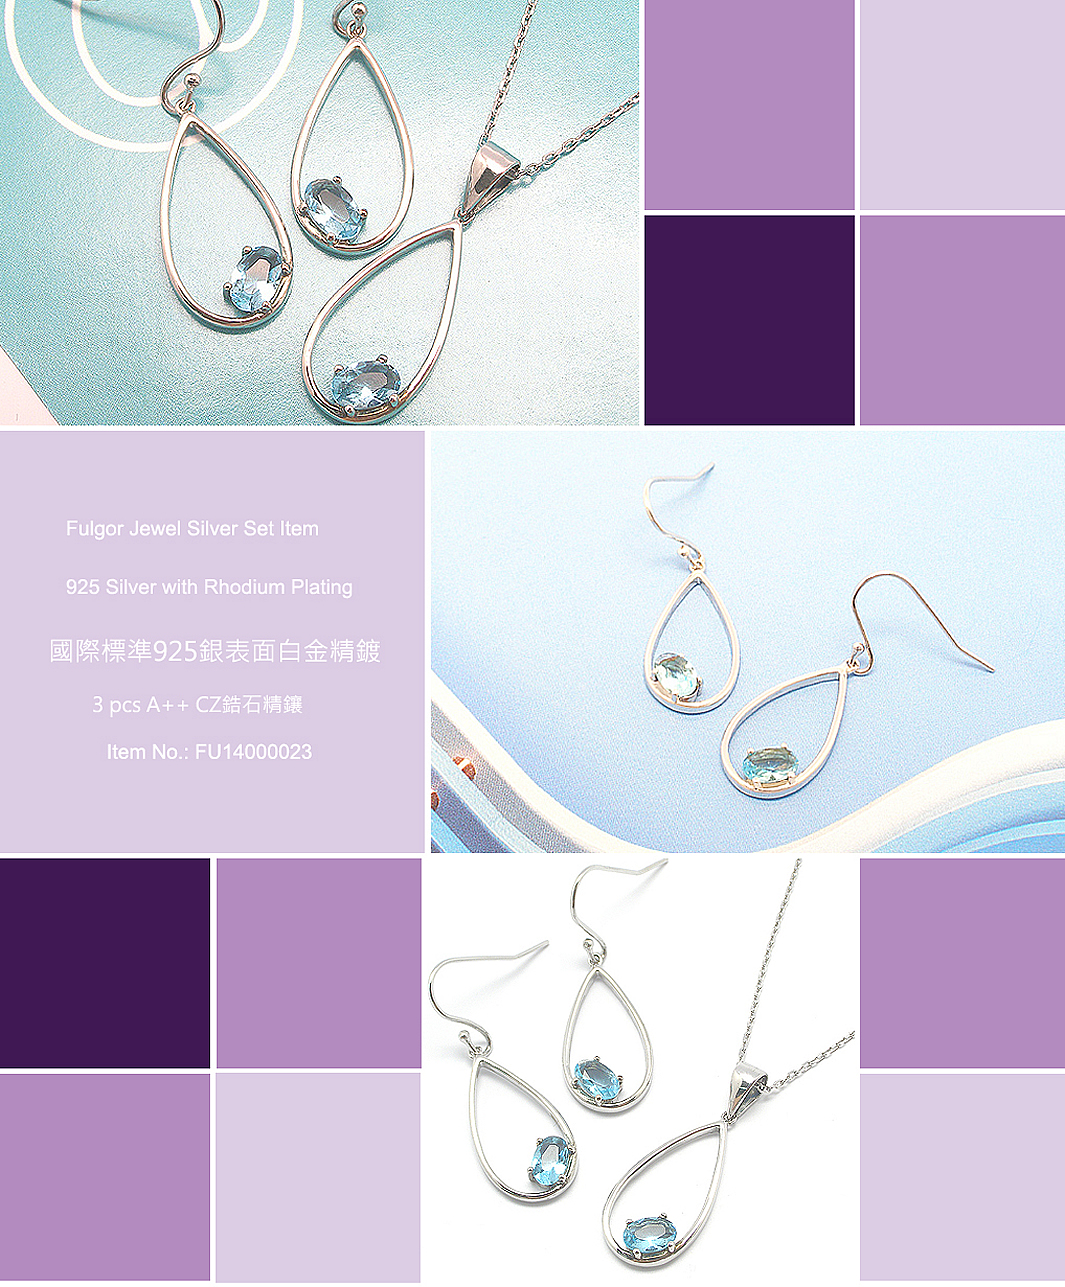 Silver-Earring-necklace-set-FU14000023-FulgorJewel-info.jpg